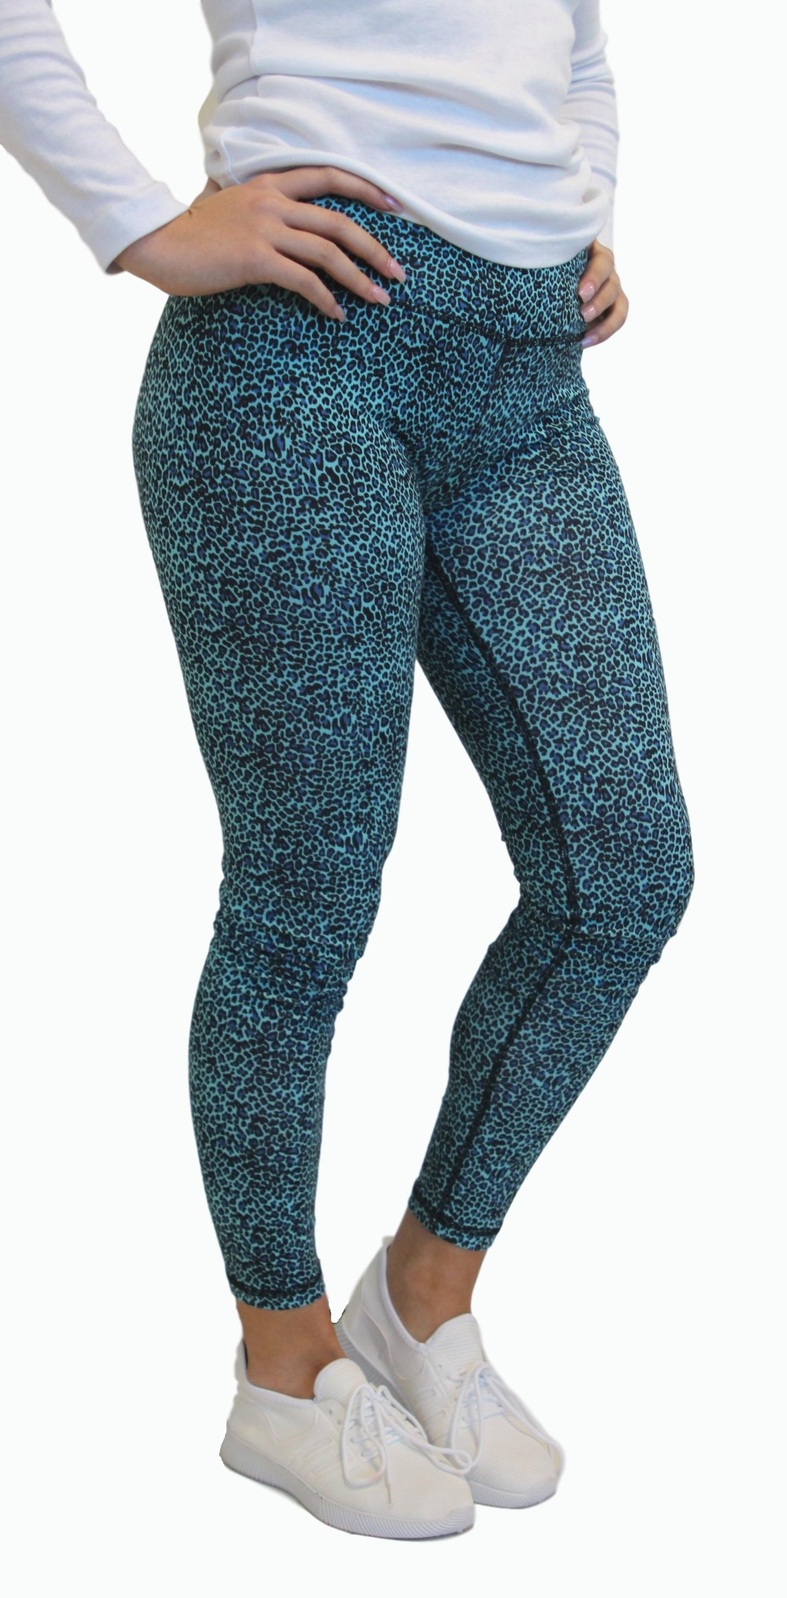 Ladies Leggings Yoga Activewear Leopard Print Black, Purple or Teal (37043)